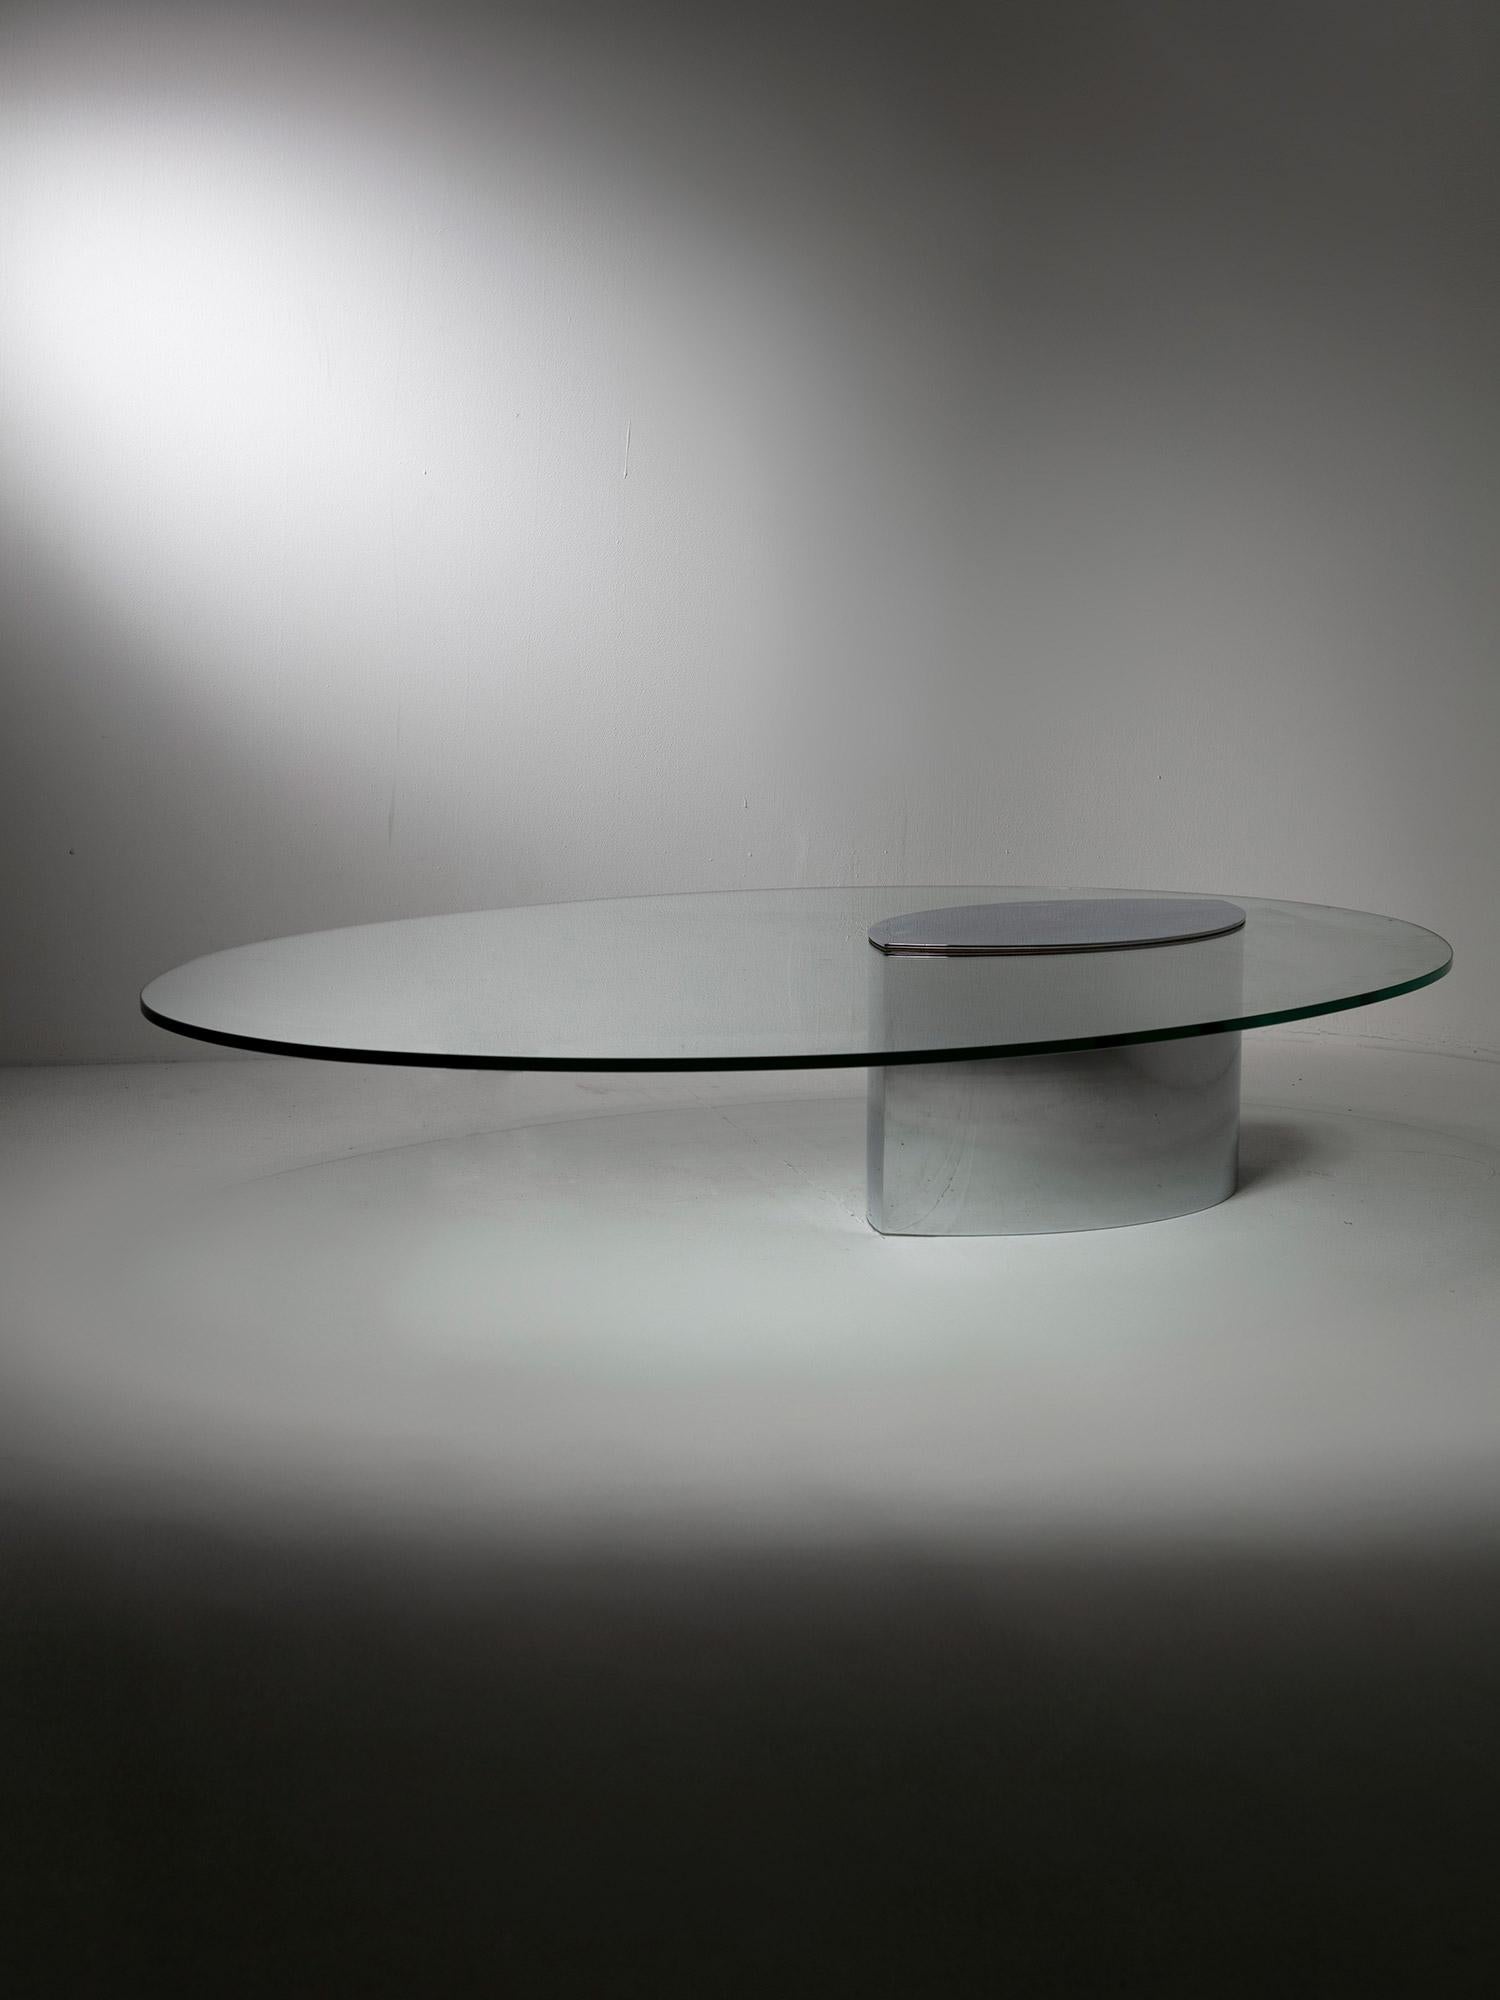 Table basse iconique Lunario de Cini Boeri pour Gavina.
La base en laiton chromé poli supporte une grande surface de verre ovale.
L'un des premiers exemples de tables à plateau en porte-à-faux, avec sa lourde base à contrepoids.
La pièce se tient